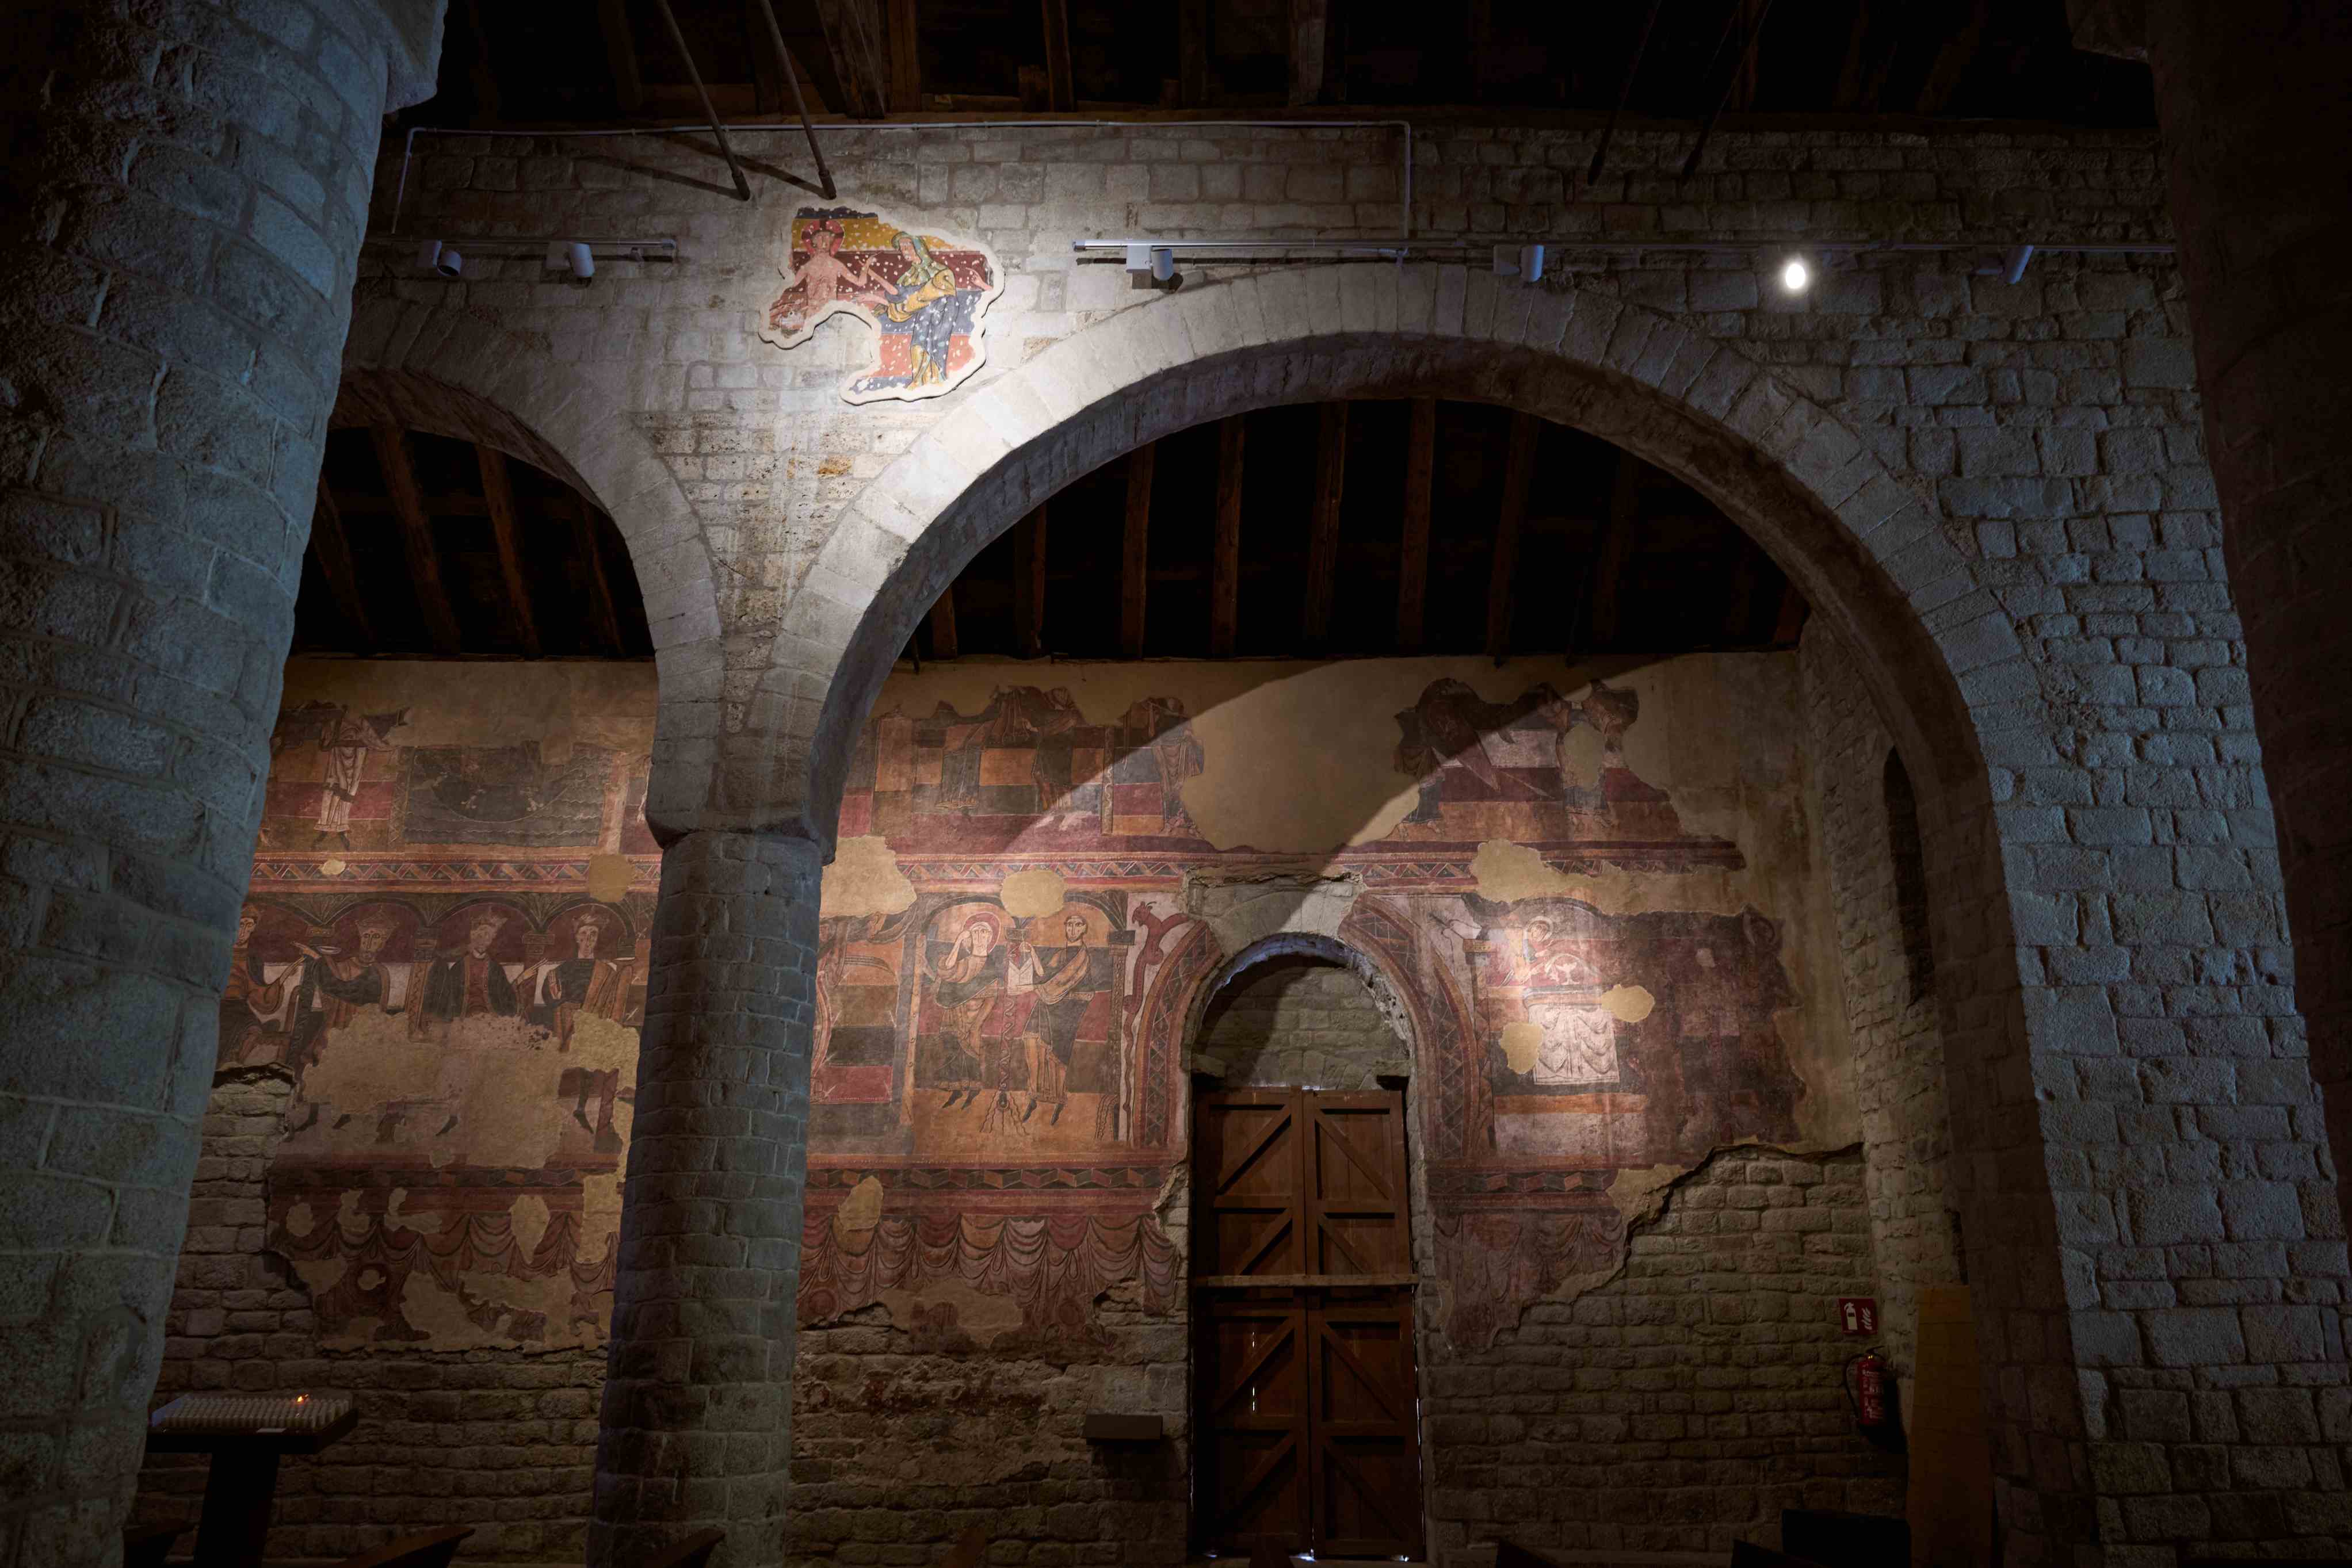 Restaurat un fragment de pintura mural romànica amb una escena de El Bany de Jesús de Santa Maria de Taüll.